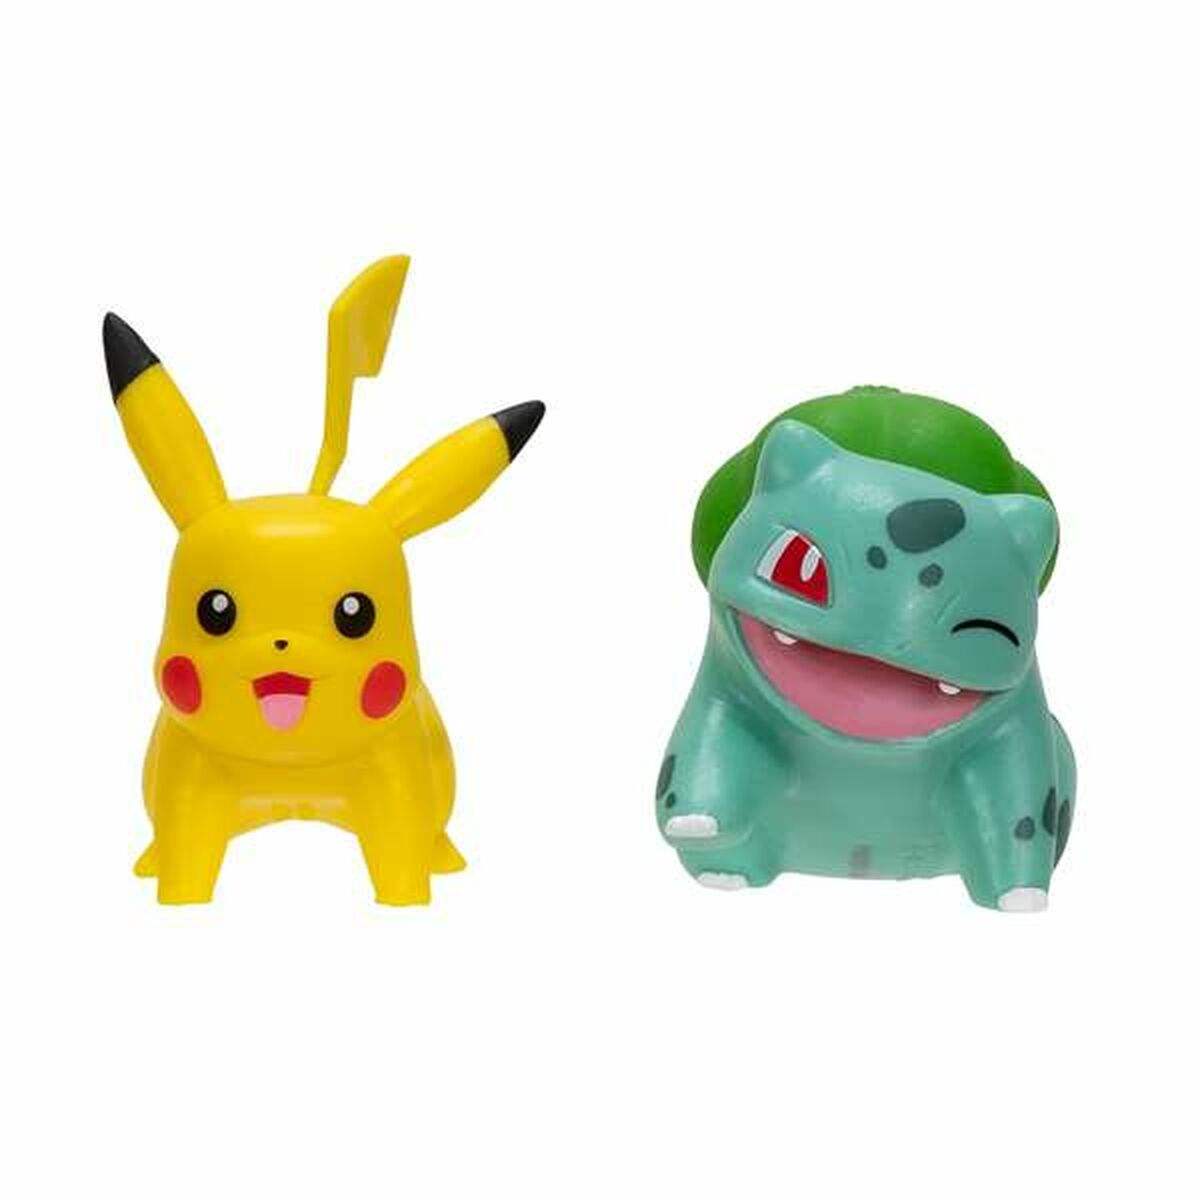 Ensemble de Figurines Pokémon 5 cm 2 Pièces